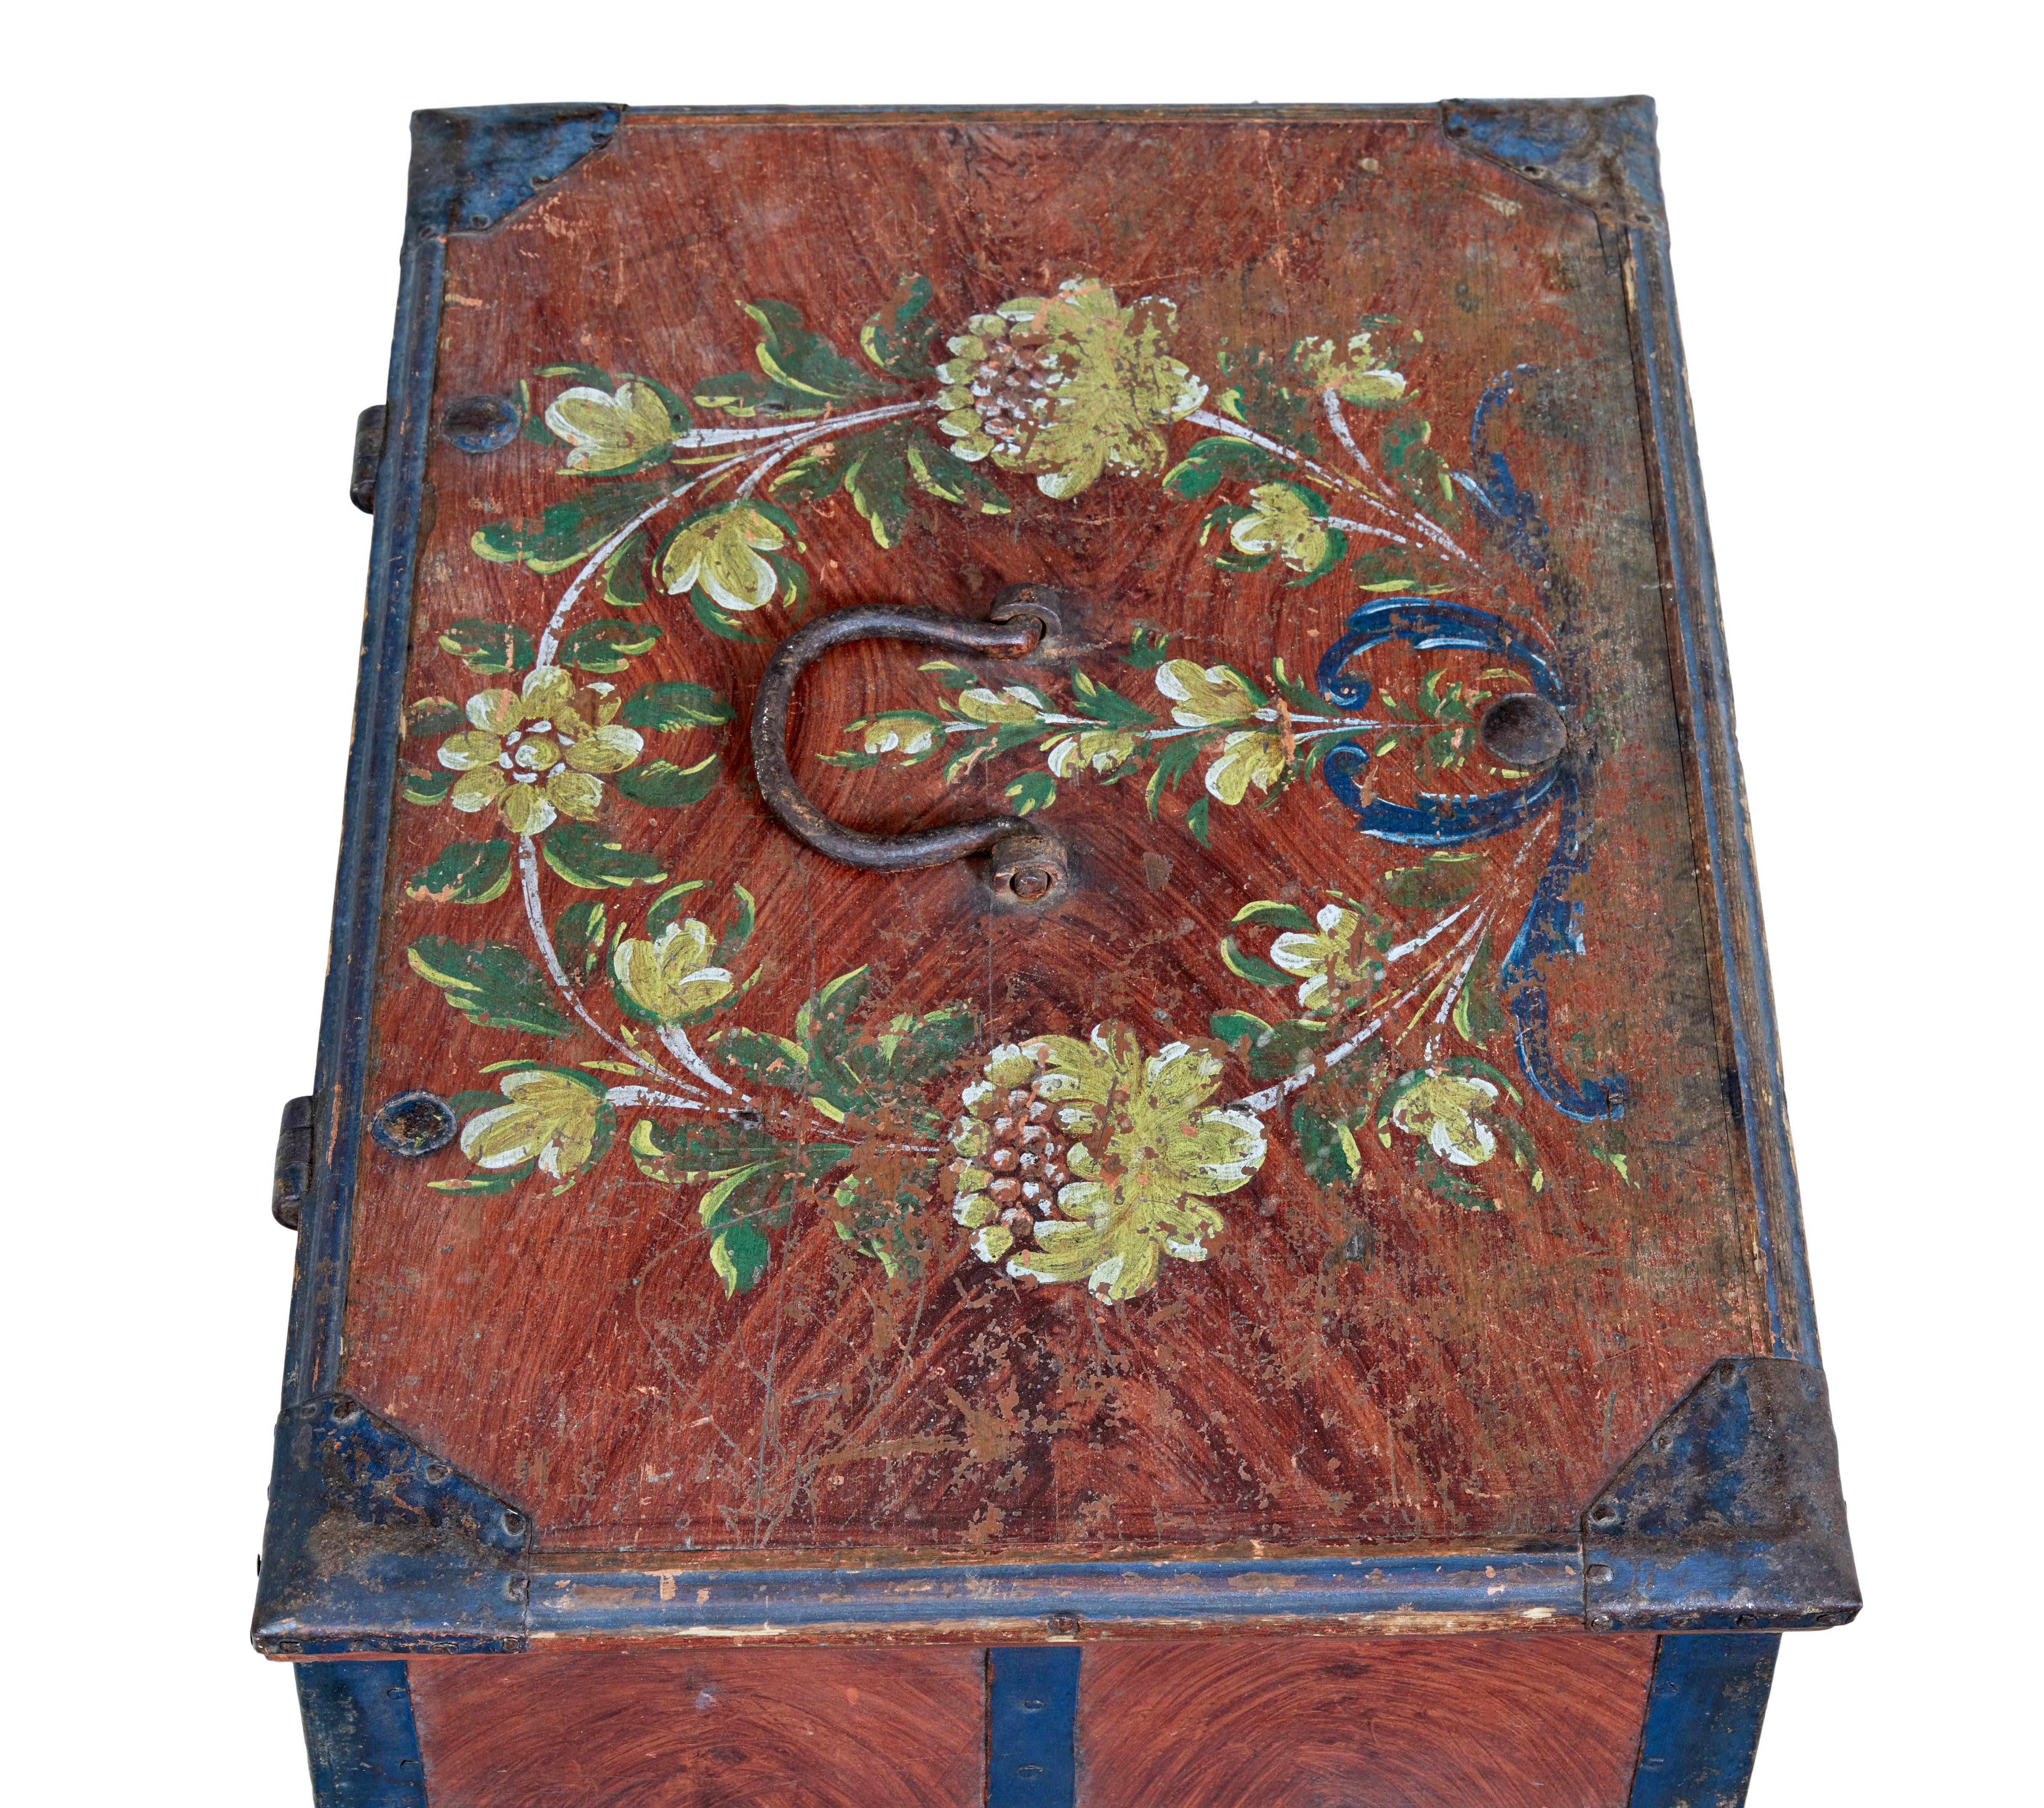 Boîte peinte d'art populaire suédois du milieu du 19e siècle, vers 1865.

Boîte à reliure métallique en pin suédois de bonne qualité.  Décorée d'une peinture à base de chiffons et d'une sangle peinte en bleu.  Couronne florale peinte à la main sur